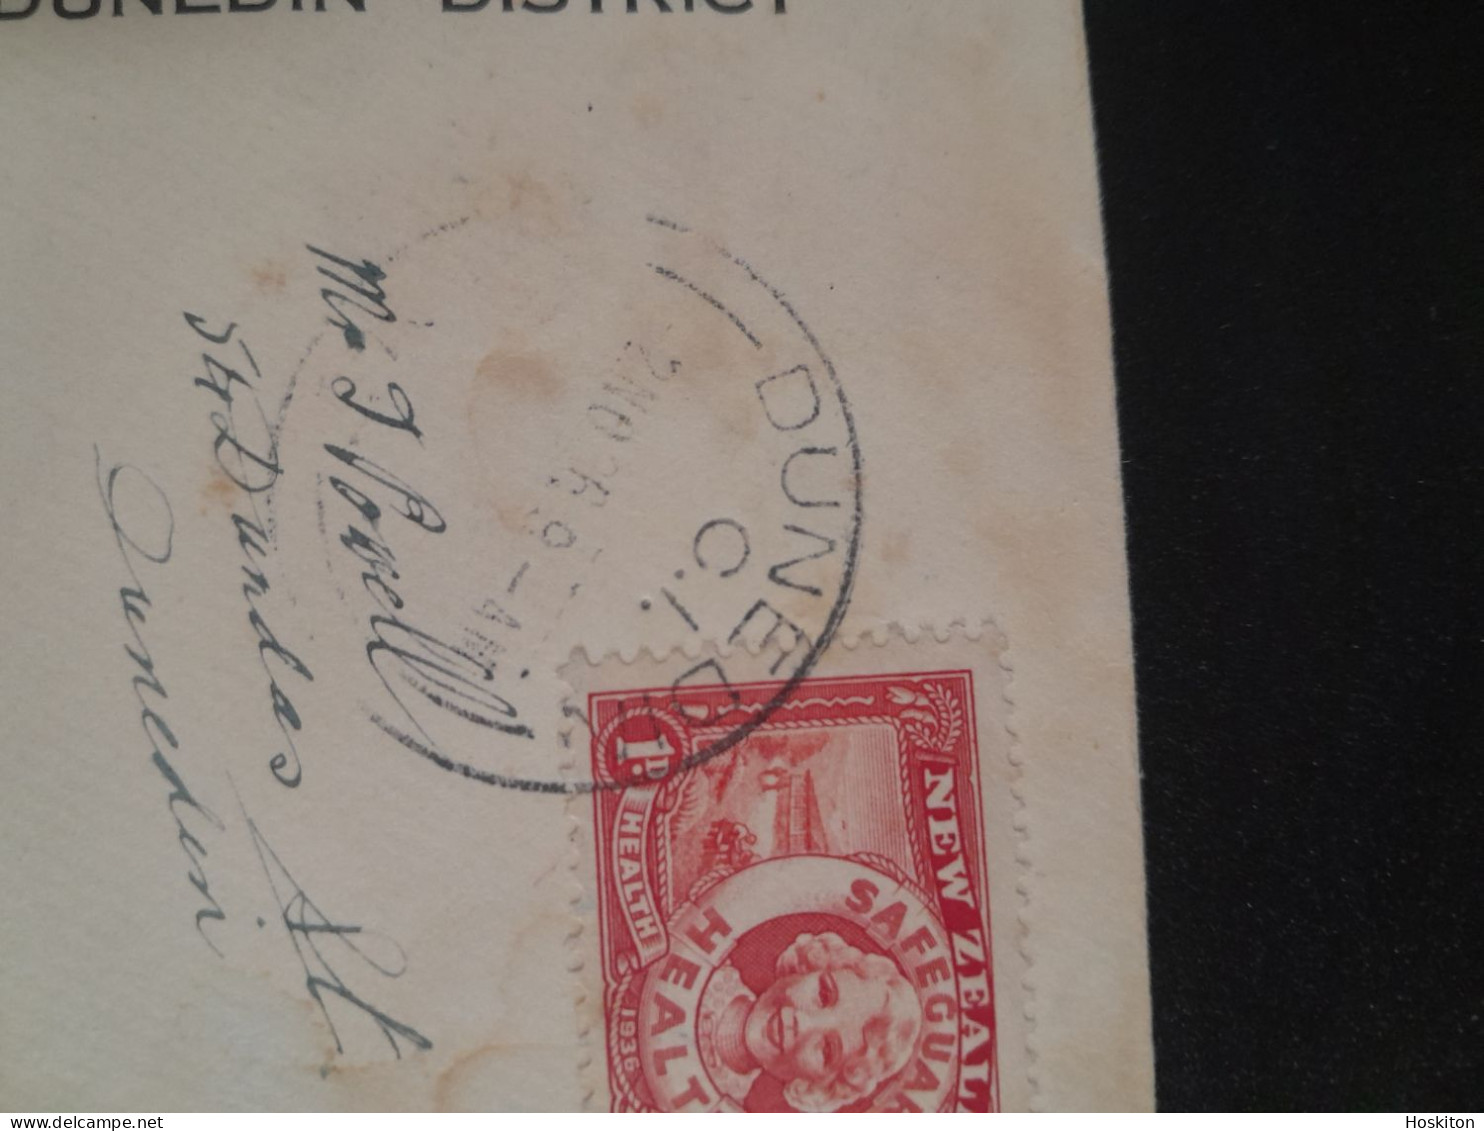 2 Nov 1936 Health Stamps For Health Camps - Briefe U. Dokumente